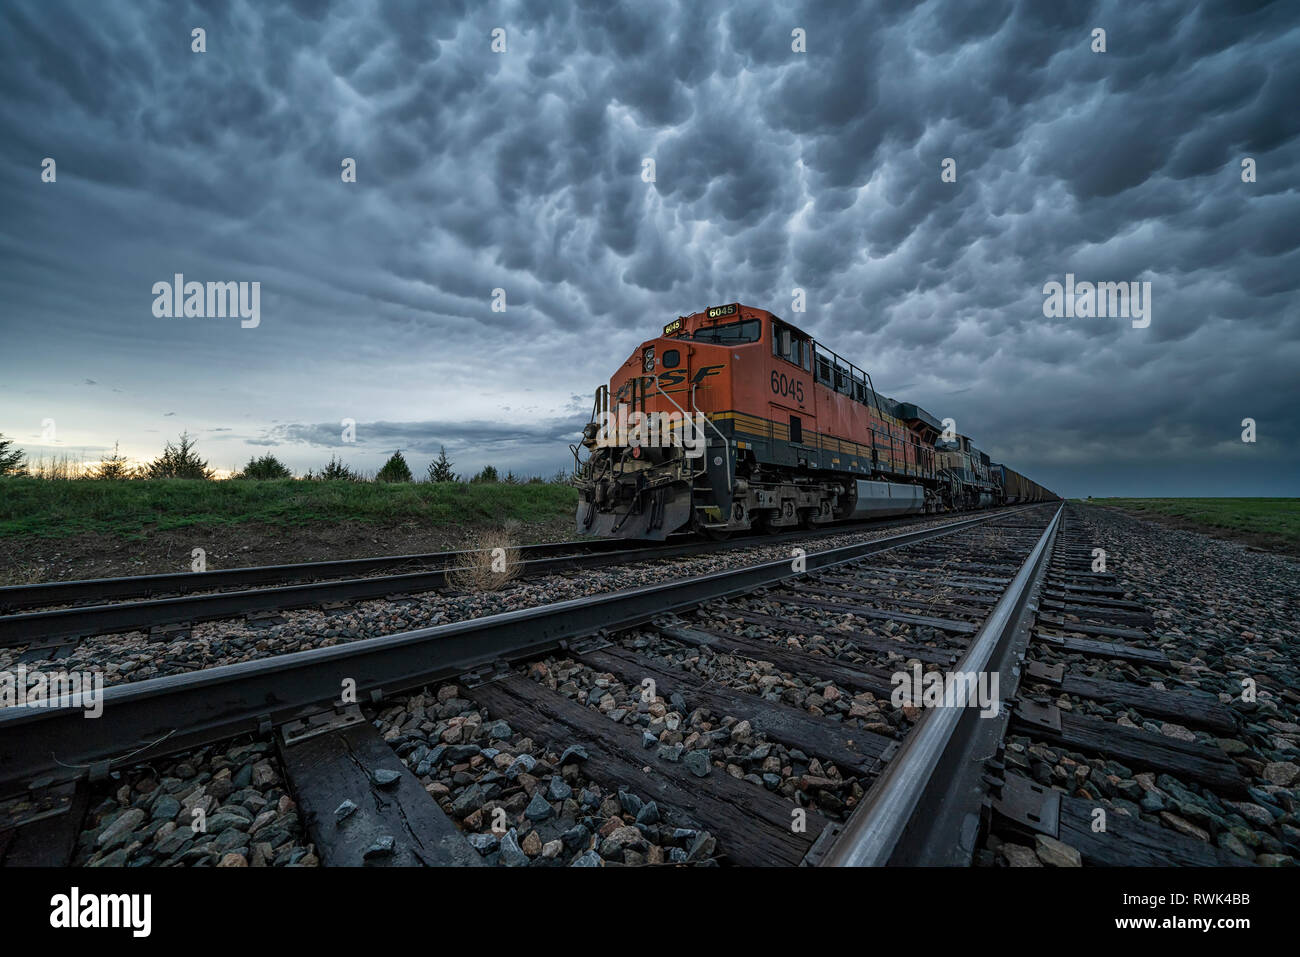 Güterzug mit Mammatus Wolken Overhead während eines Sturmjagen tour, Oklahoma, Vereinigte Staaten von Amerika Stockfoto